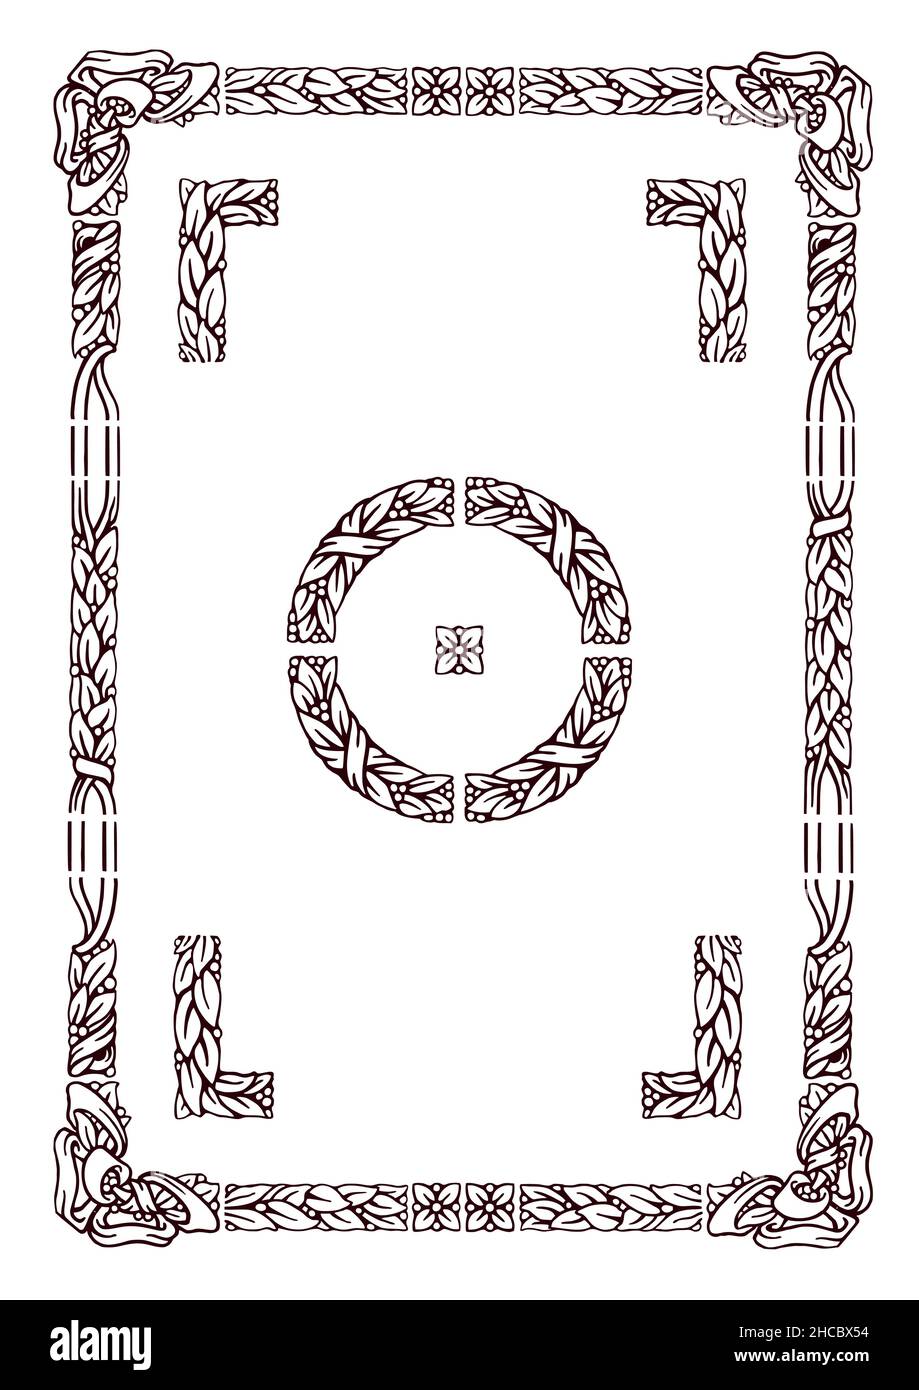 elementos de marco floral tipográfico antiguo con solución alternativa de esquina y borde Ilustración del Vector